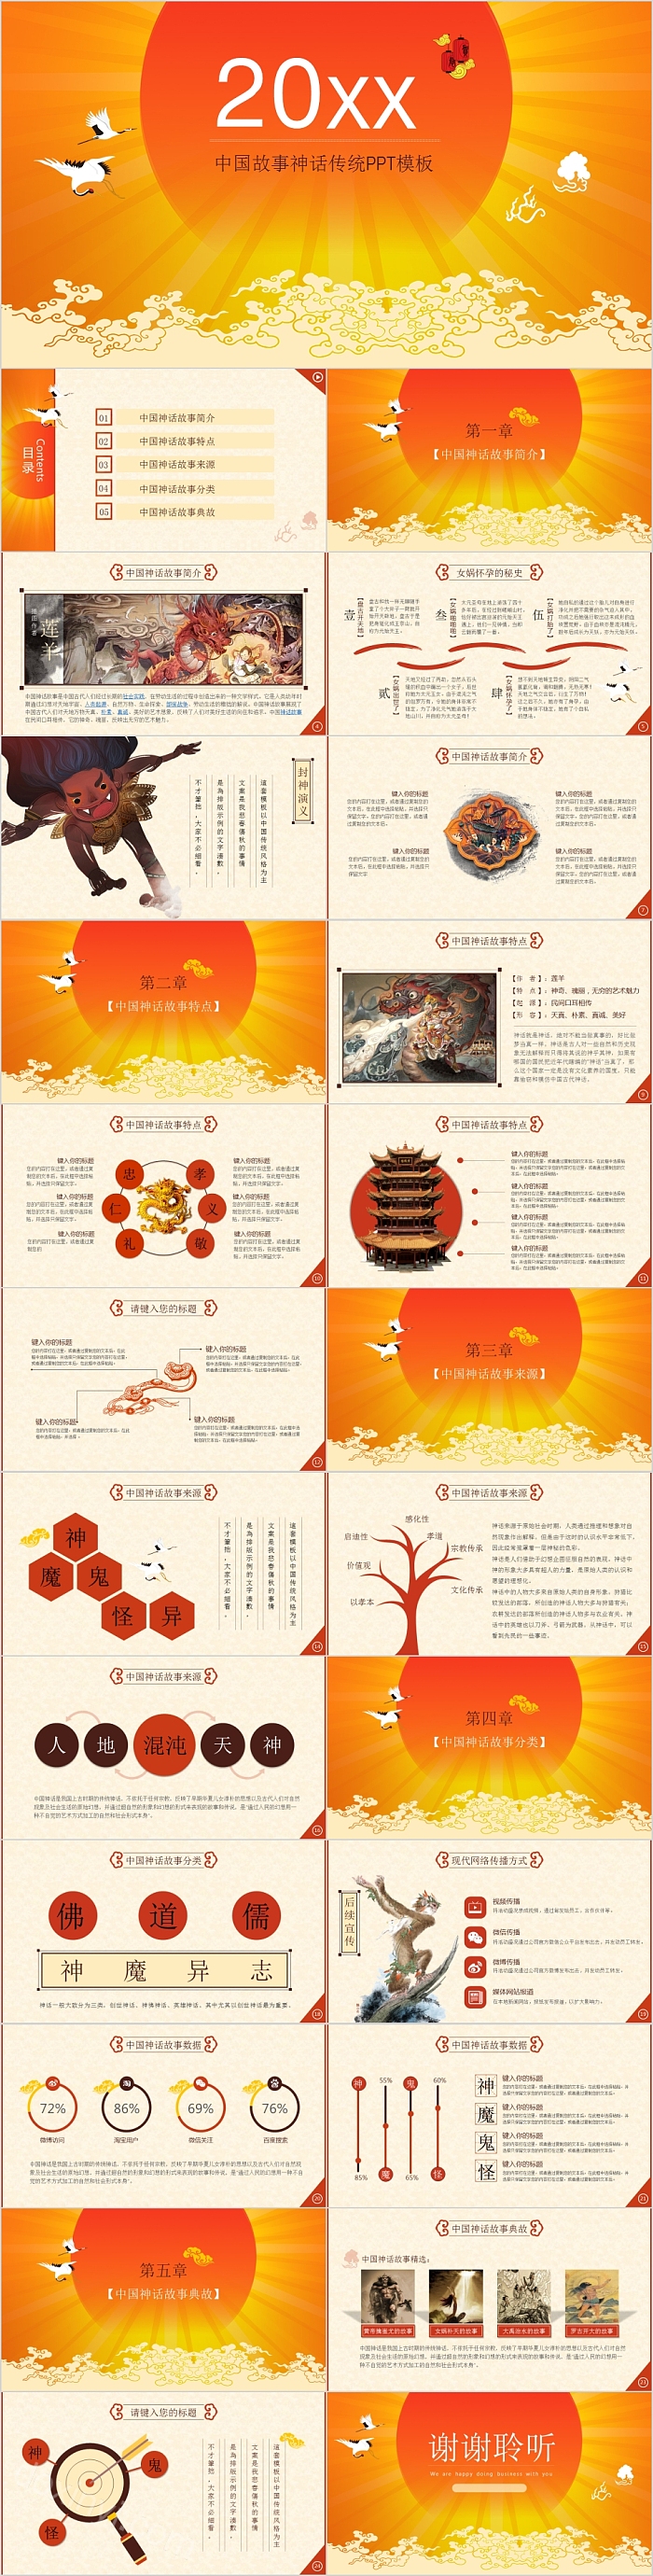 中国故事神话传统文化PPT模板